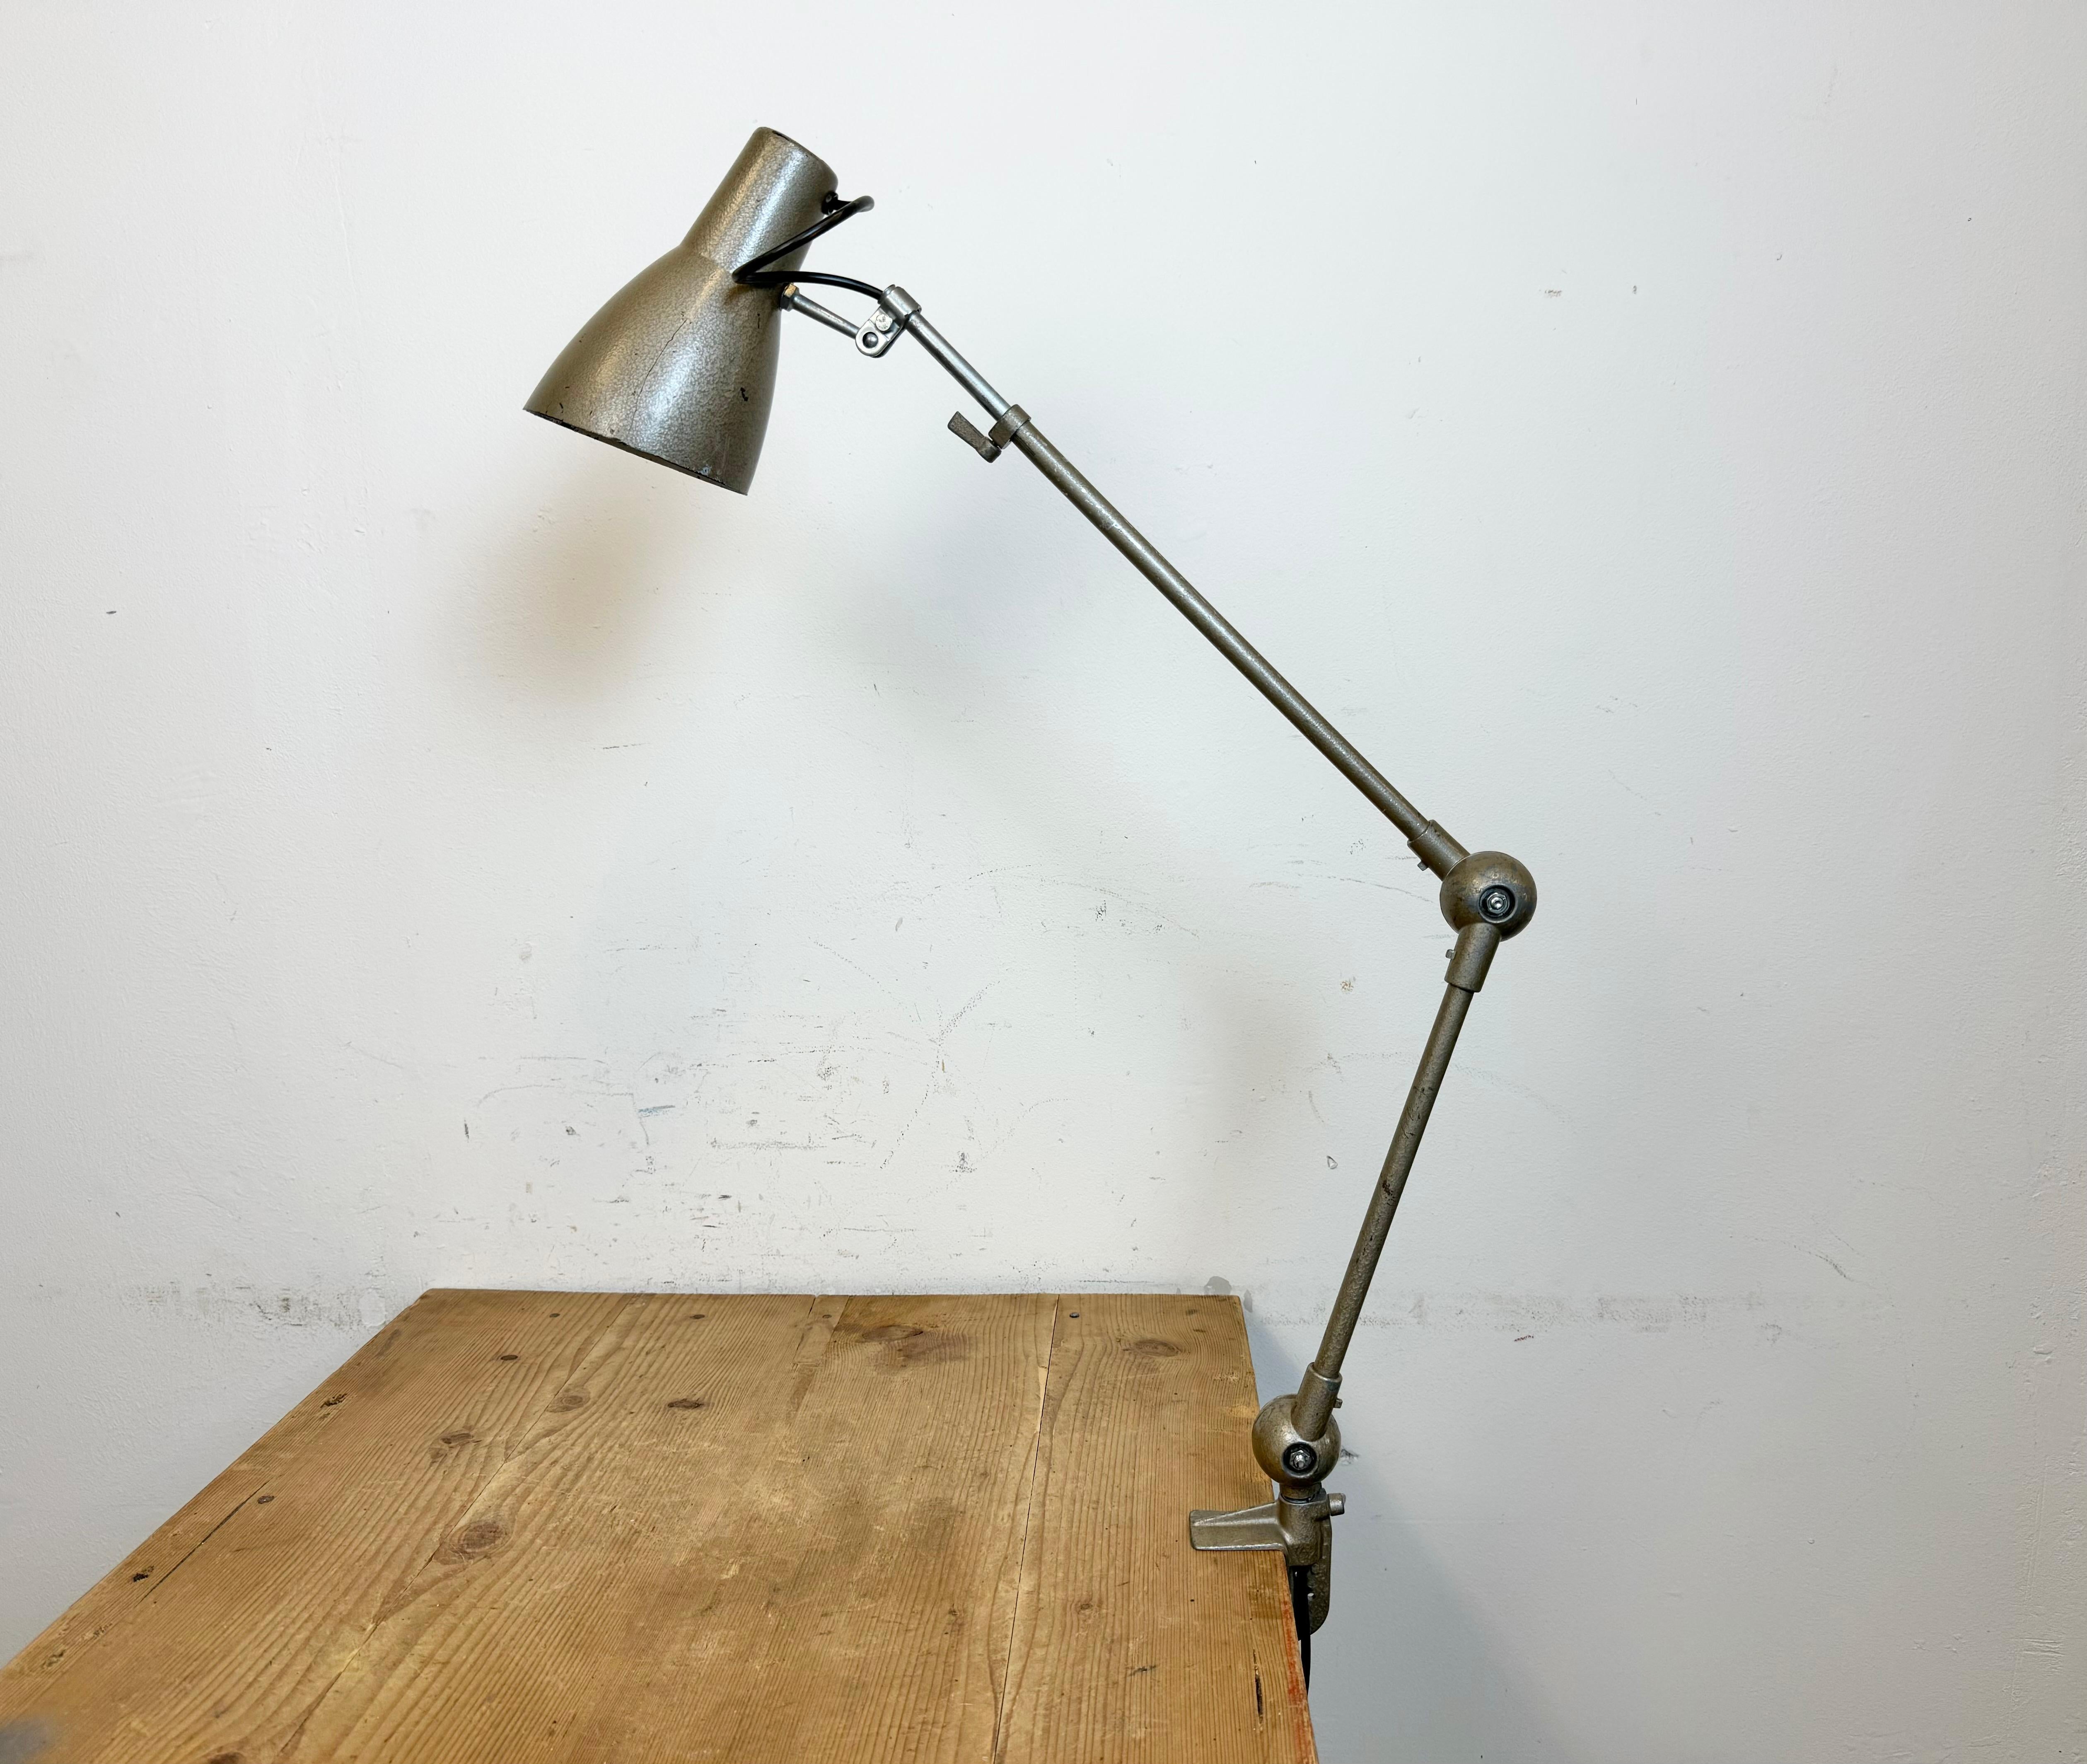 Vintage Workshop grau Hammerschlag Tischlampe mit verstellbarer Höhe und Winkel von AB Depose in Frankreich in den 1960er Jahren gemacht. Sie hat einen Schirm aus Bakelit, einen Eisenarm und einen Klemmsockel.  E 14 Glühbirnen. Neues Kabel.